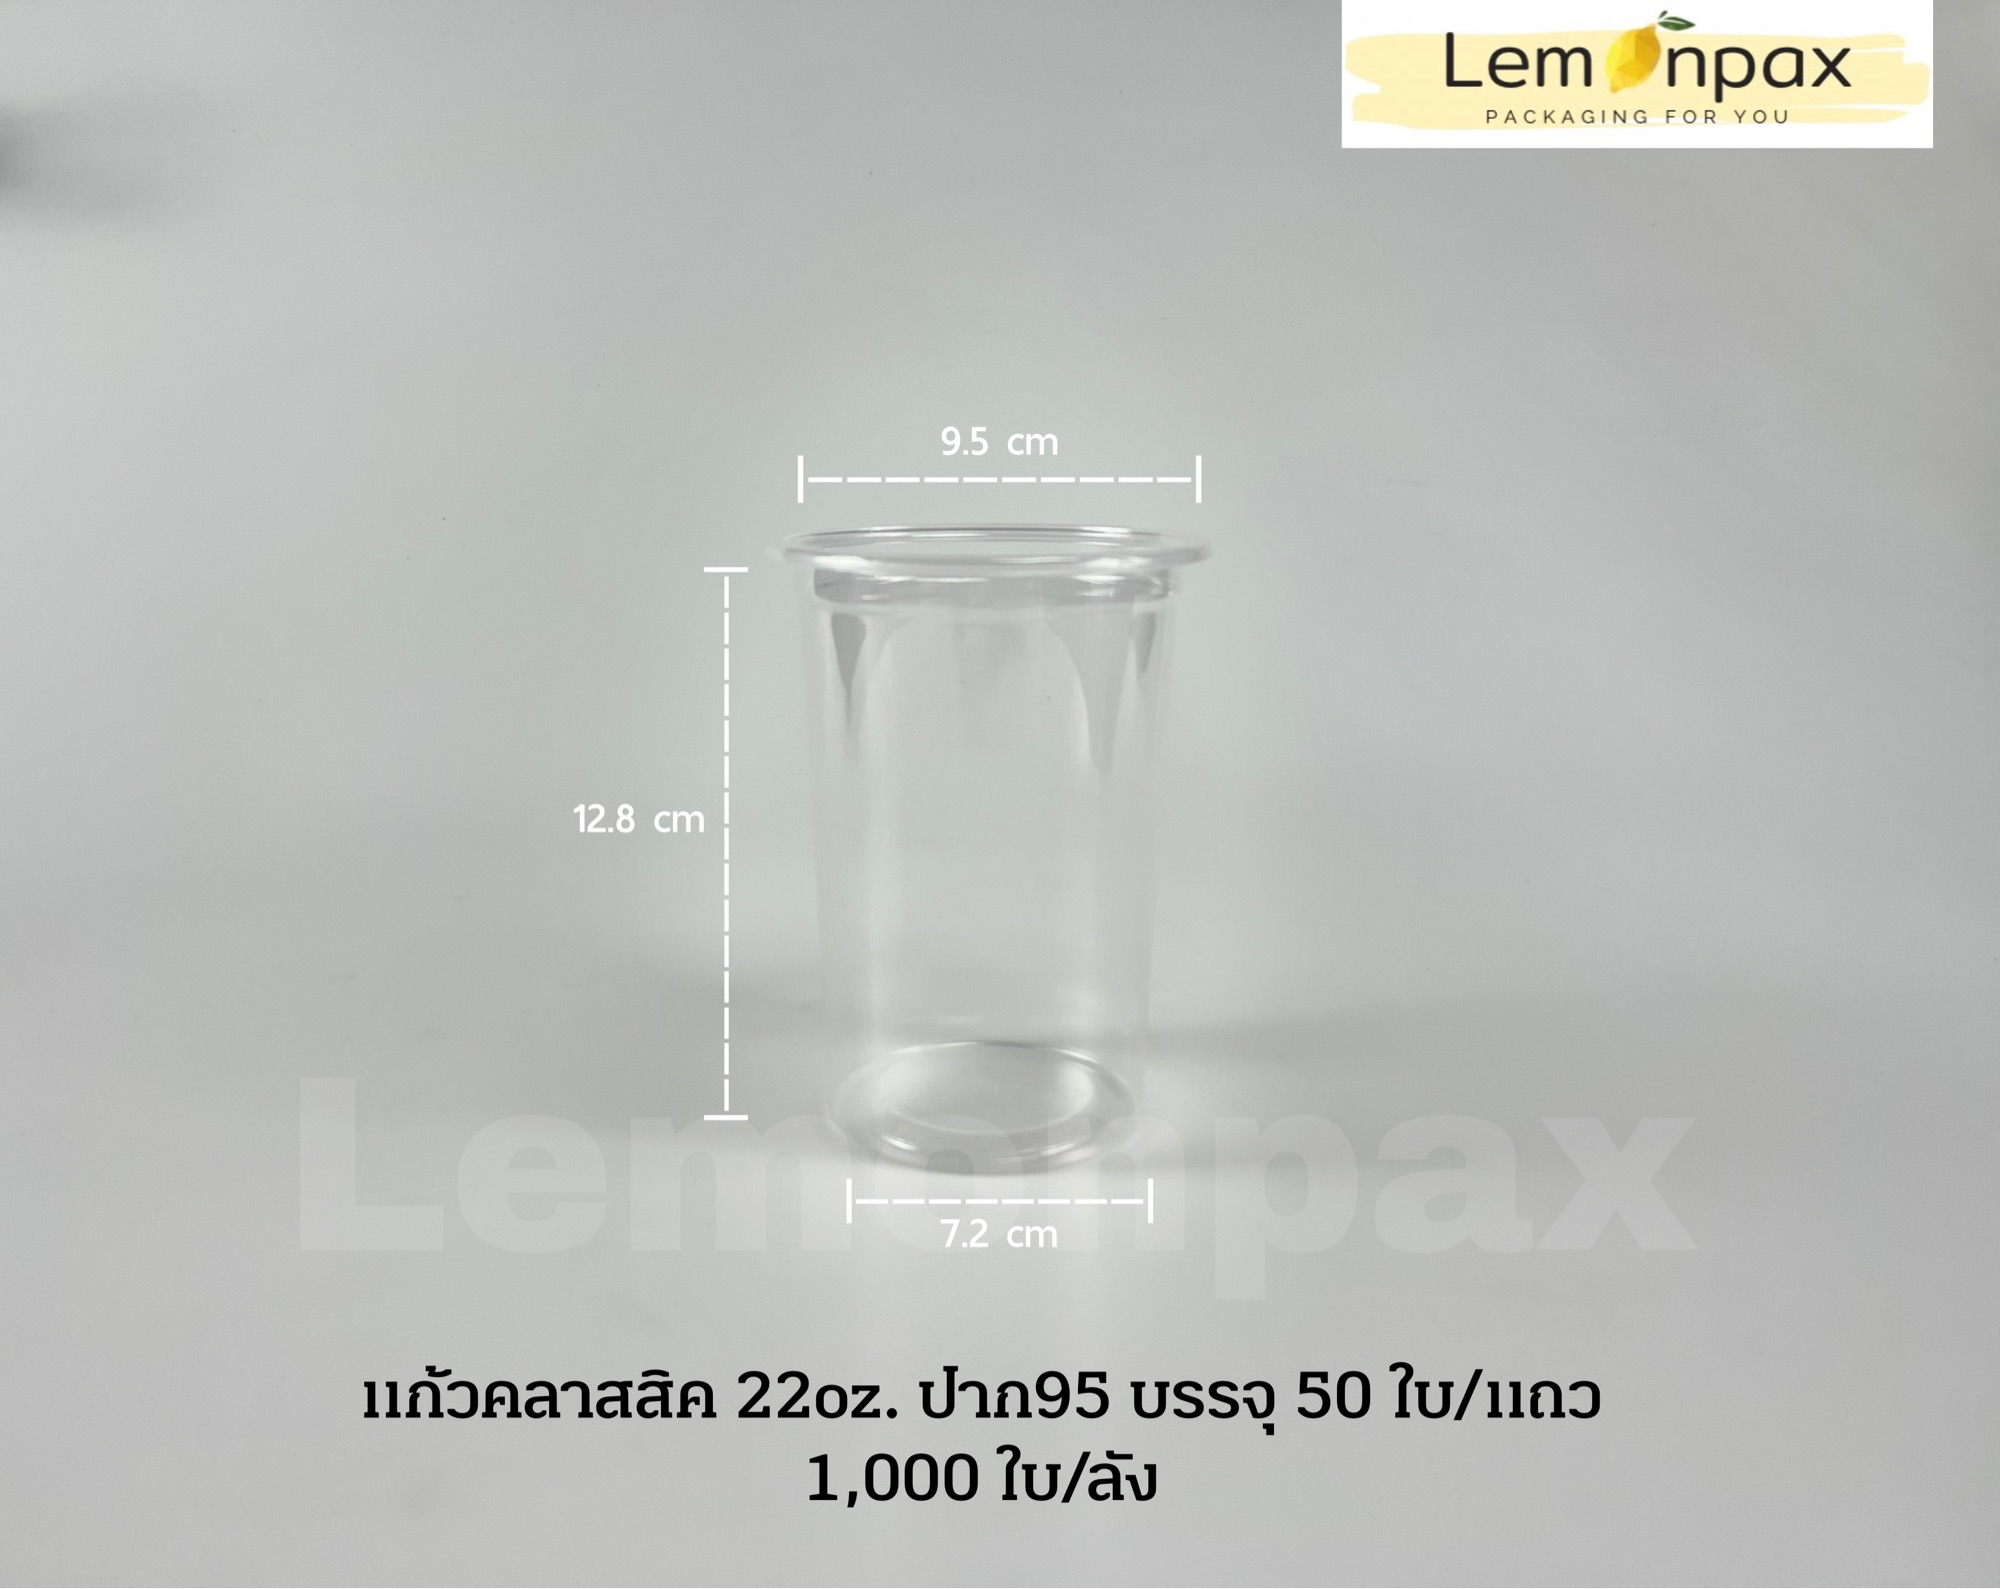 แก้วน้ำคลาสสิค 22oz. ปาก95 แก้วน้ำ พลาสติกใส บรรจุ 50 ใบ/แถว | แบบเซ็ท 25 ชุด/แถว (แก้ว+ฝา+หลอด)